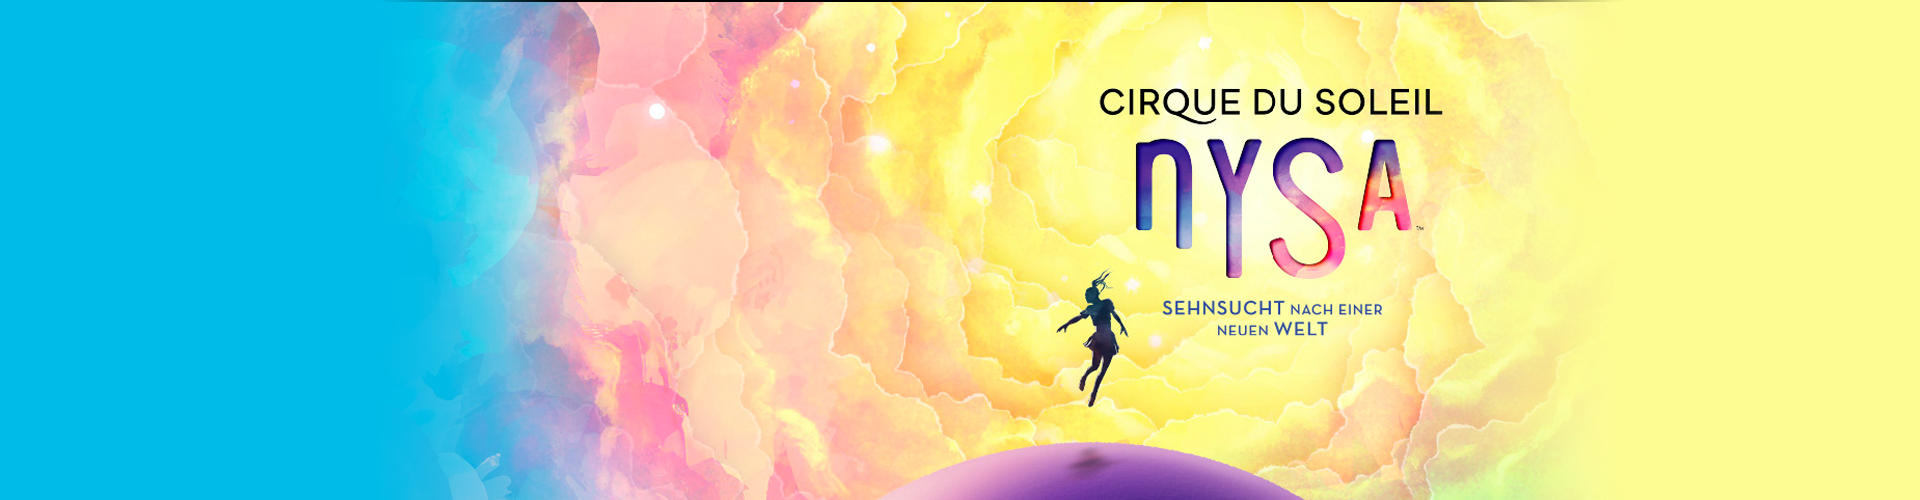 Cirque du Soleil NYSA in Berlin